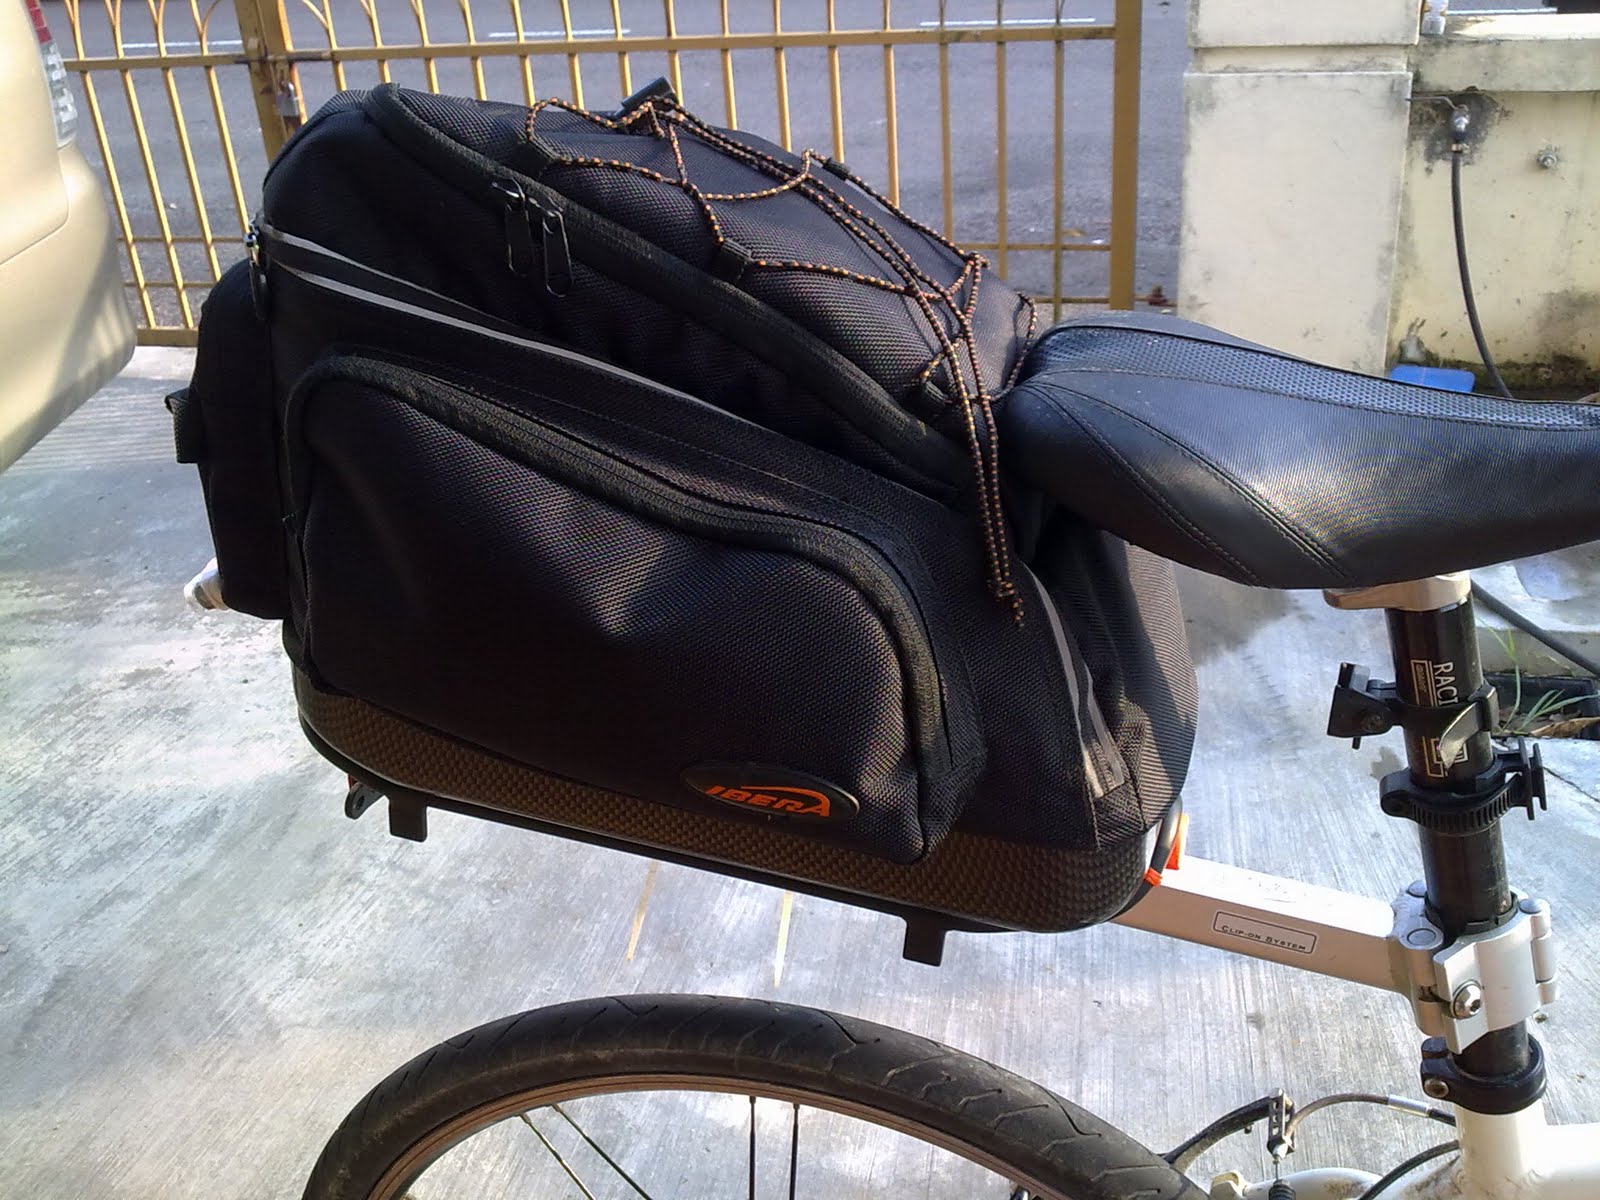 akmal's bike park: Review: Ibera beam rack with bag